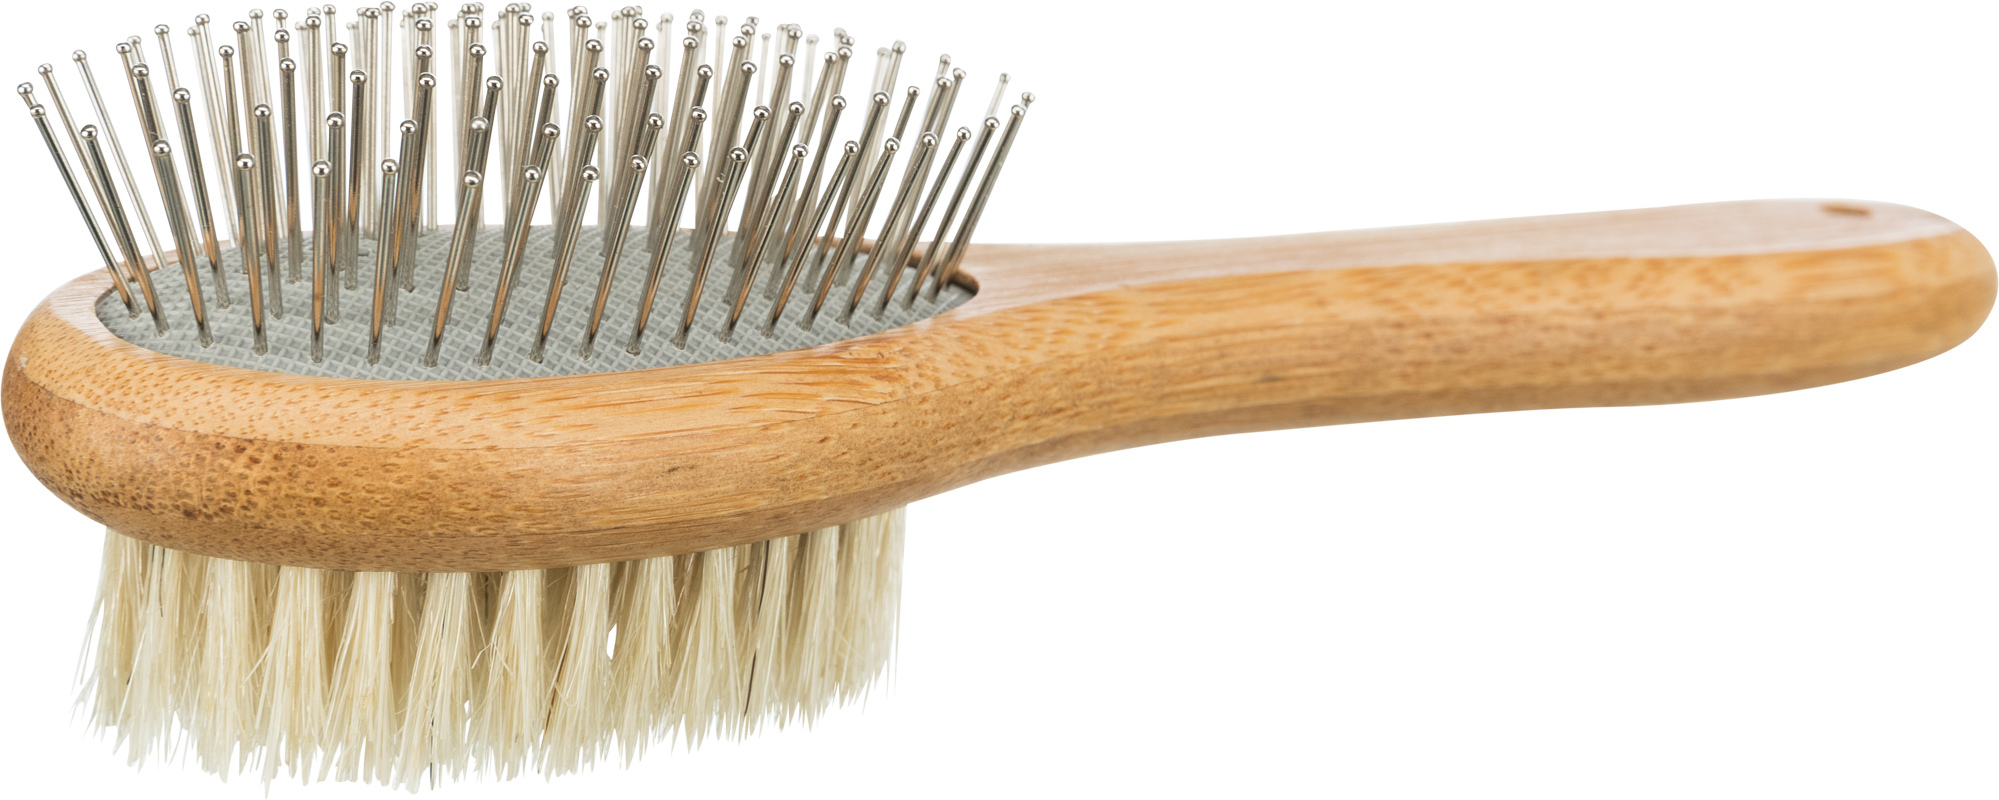 Cepillo de doble cara, cerdas de bambú natural y metal